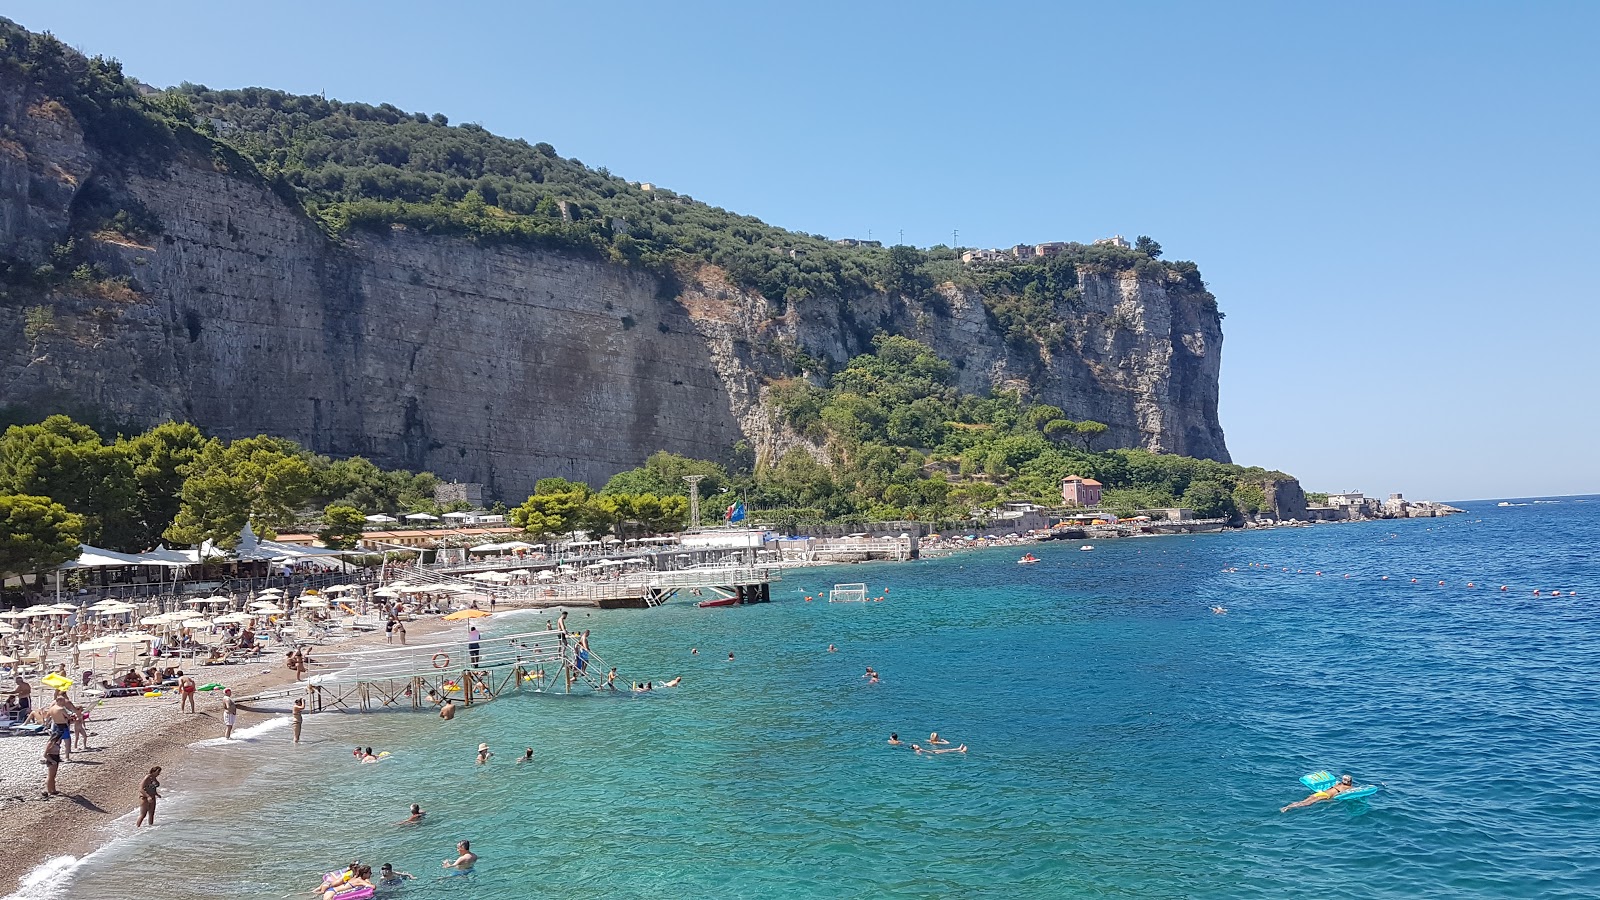 Spiaggia Seiano的照片 带有灰色细卵石表面